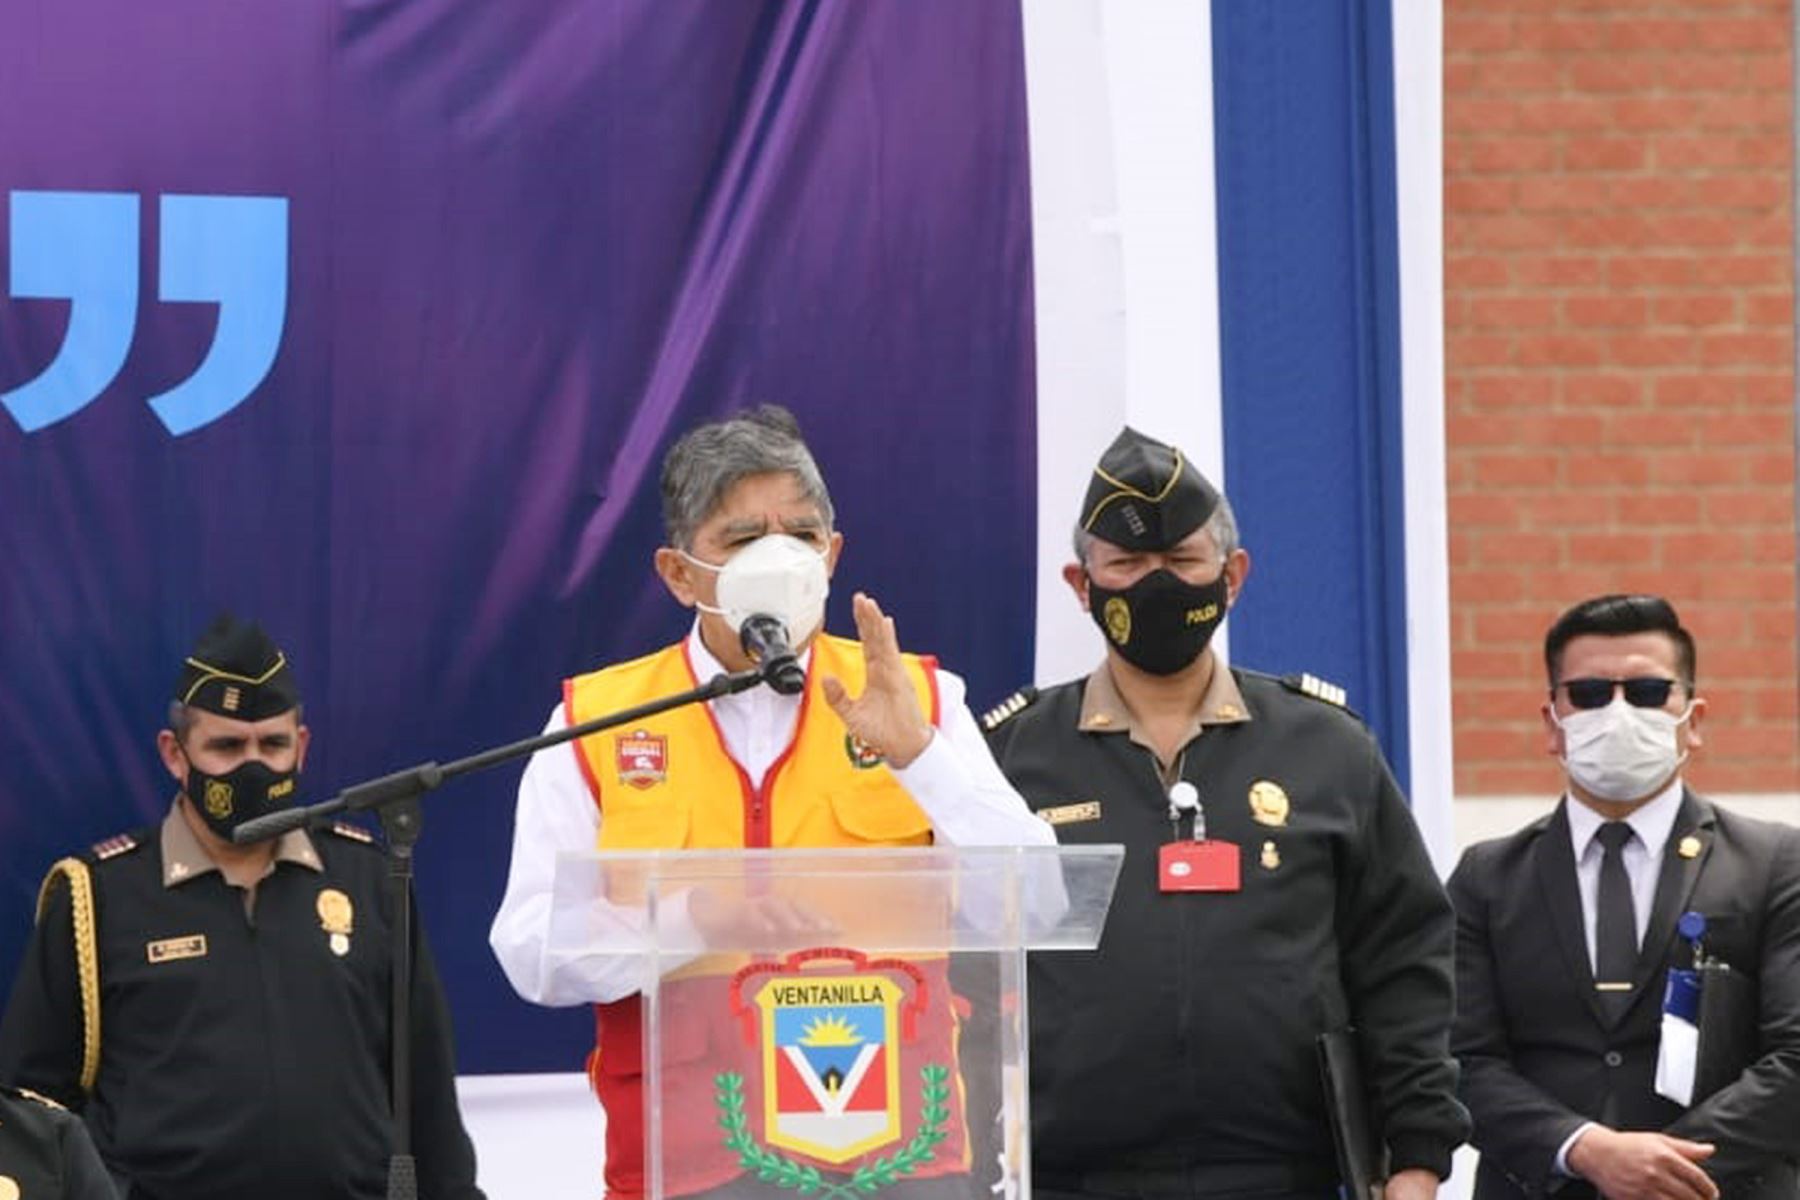 El ministro del Interior, Avelino Guillén, participó en la juramentación de 119 juntas vecinales de Ventanilla y otras zonas del Callao. Foto: ANDINA/Mininter